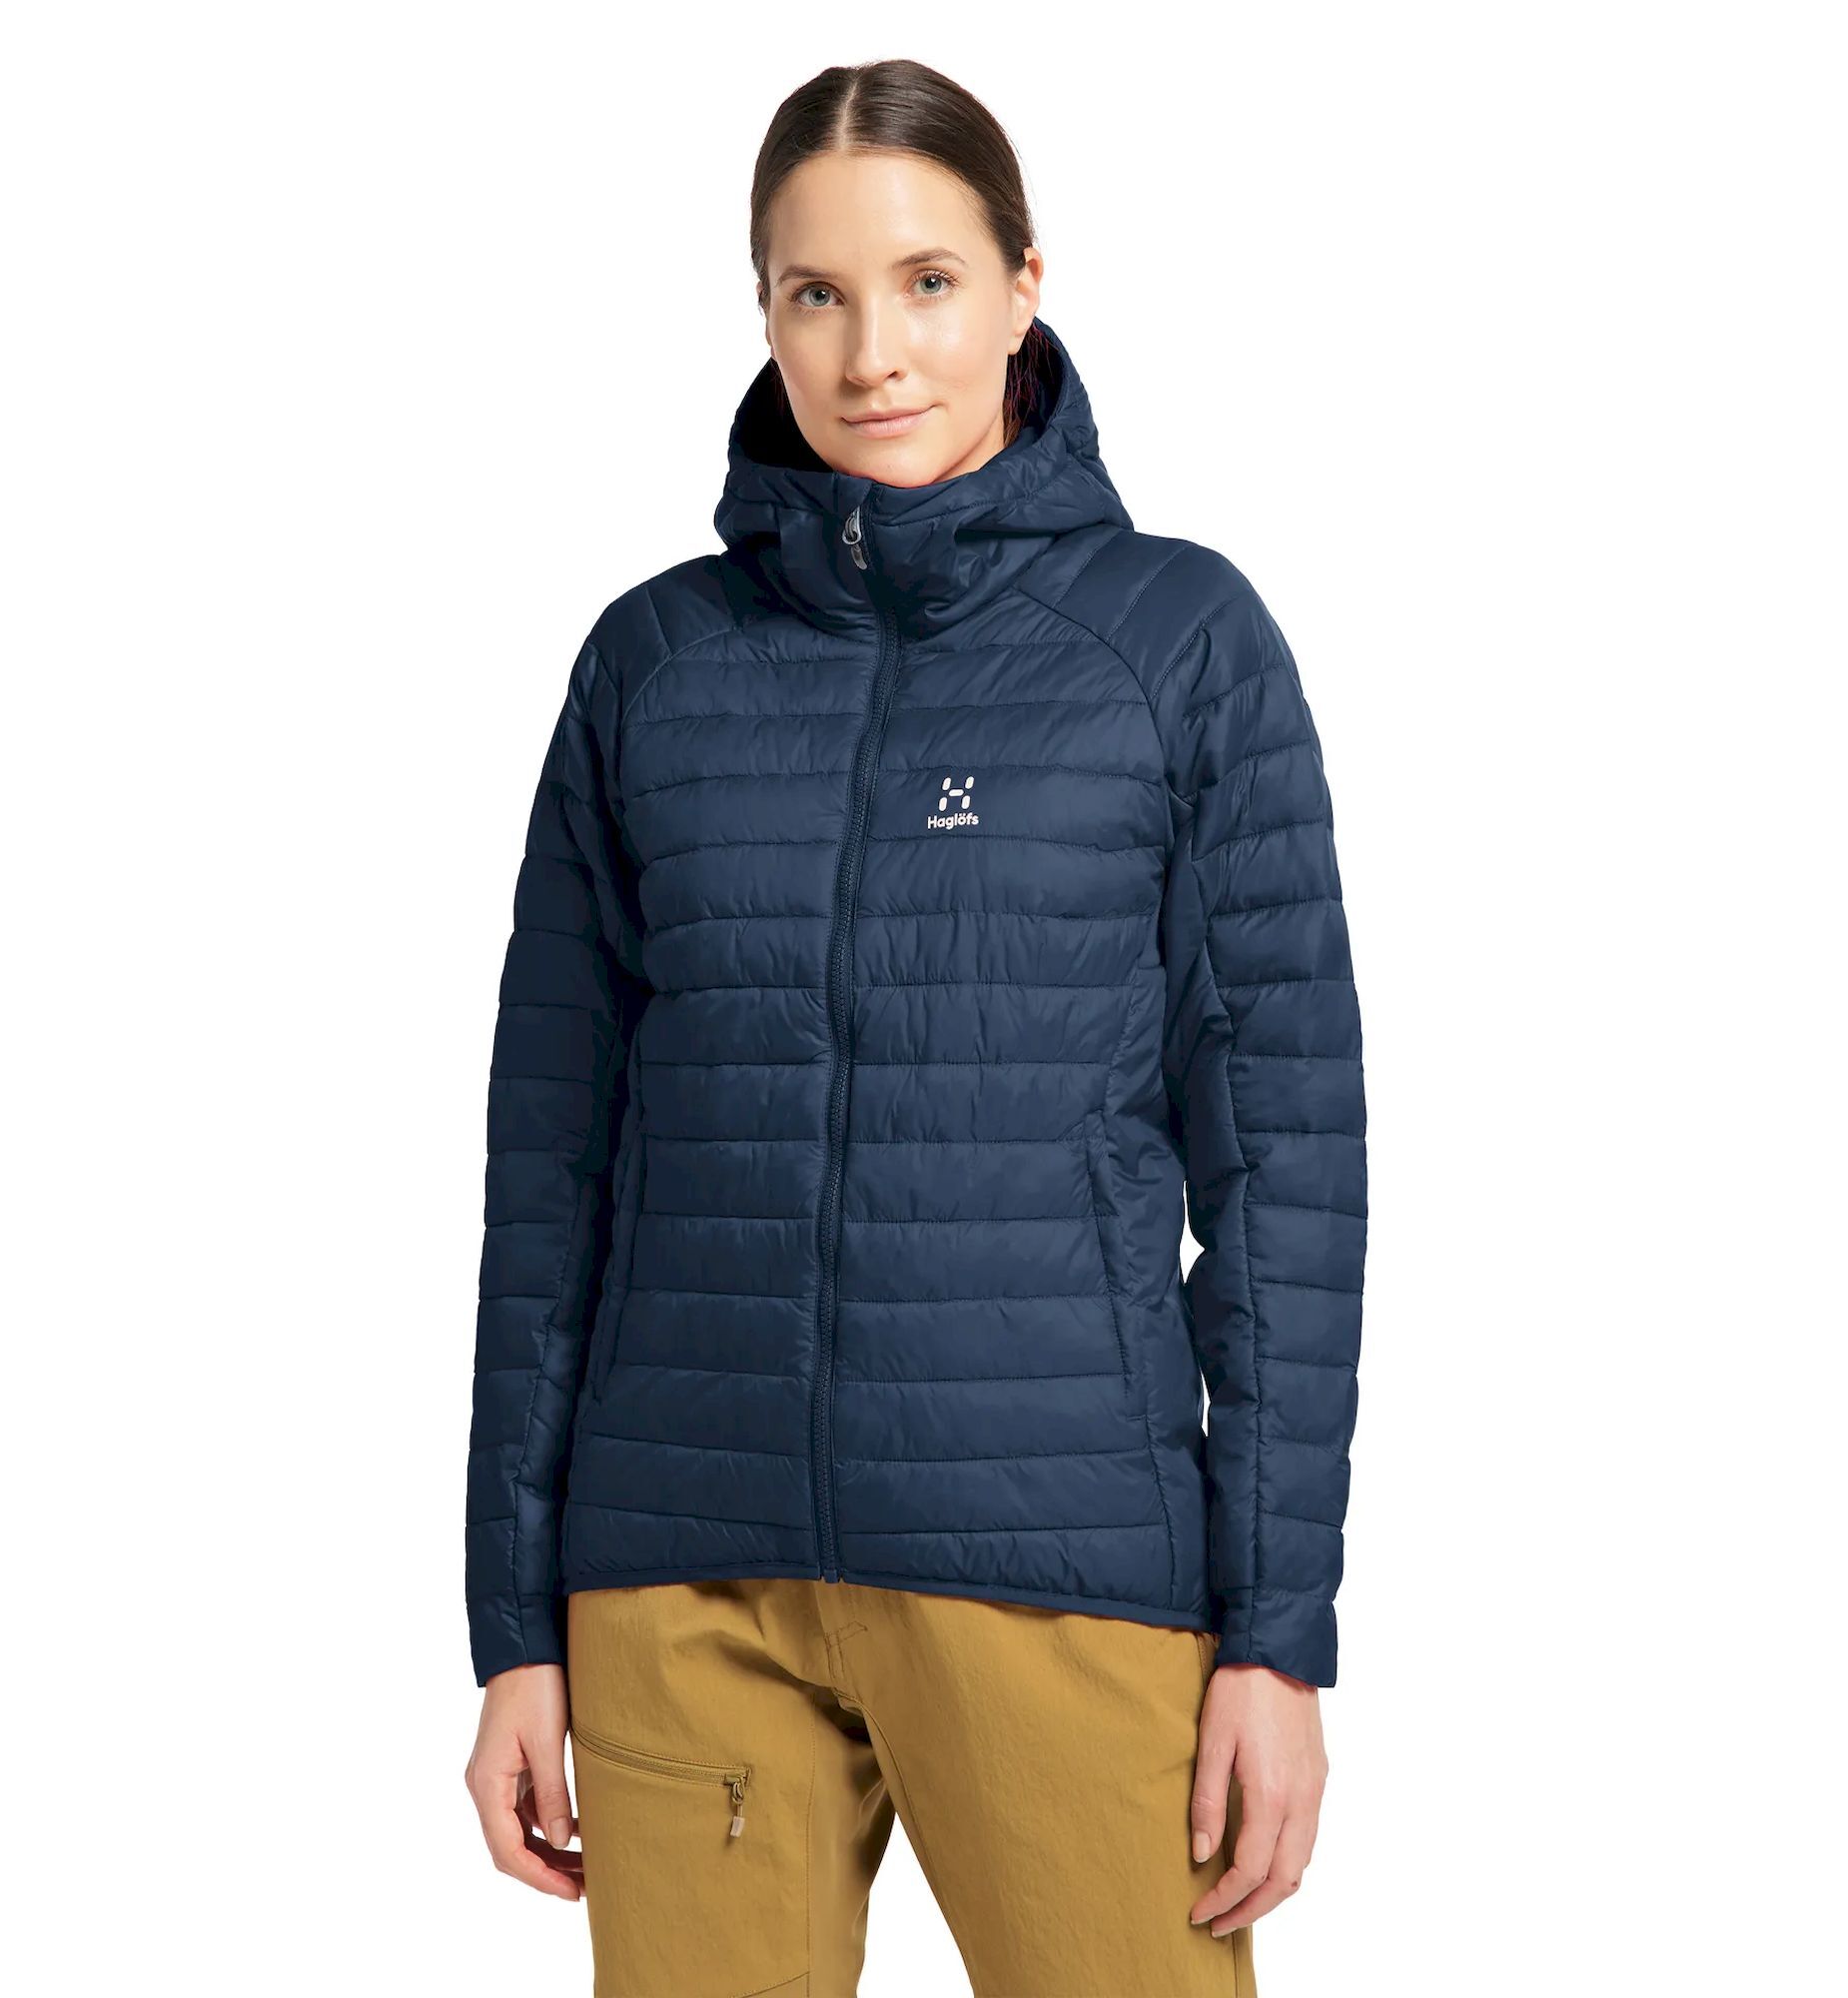 Haglöfs Spire Mimic Hood - Synthetic jacket - Women's